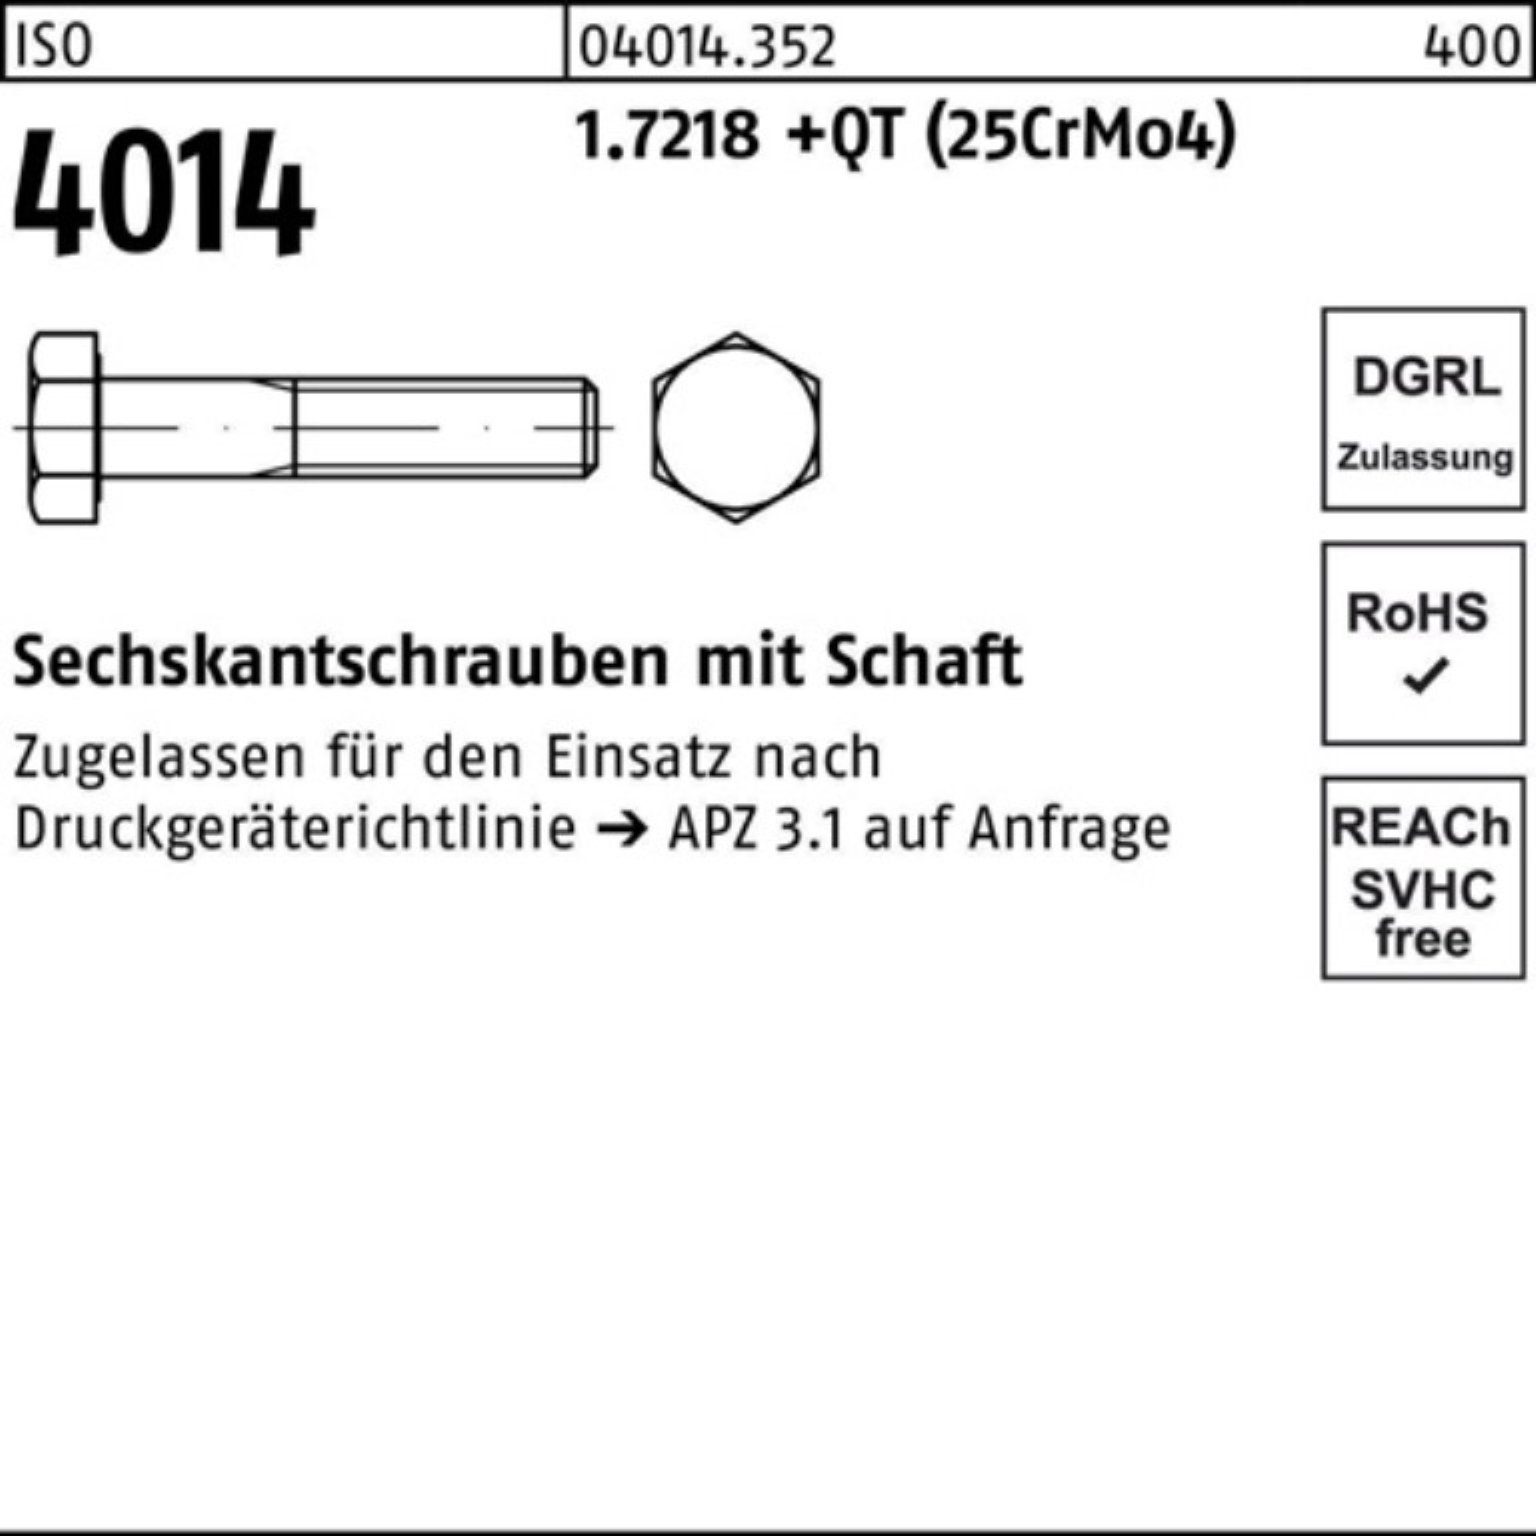 Pack (25Cr 200 Schaft Sechskantschraube 1.7218 Bufab 4014 +QT M30x Sechskantschraube 100er ISO